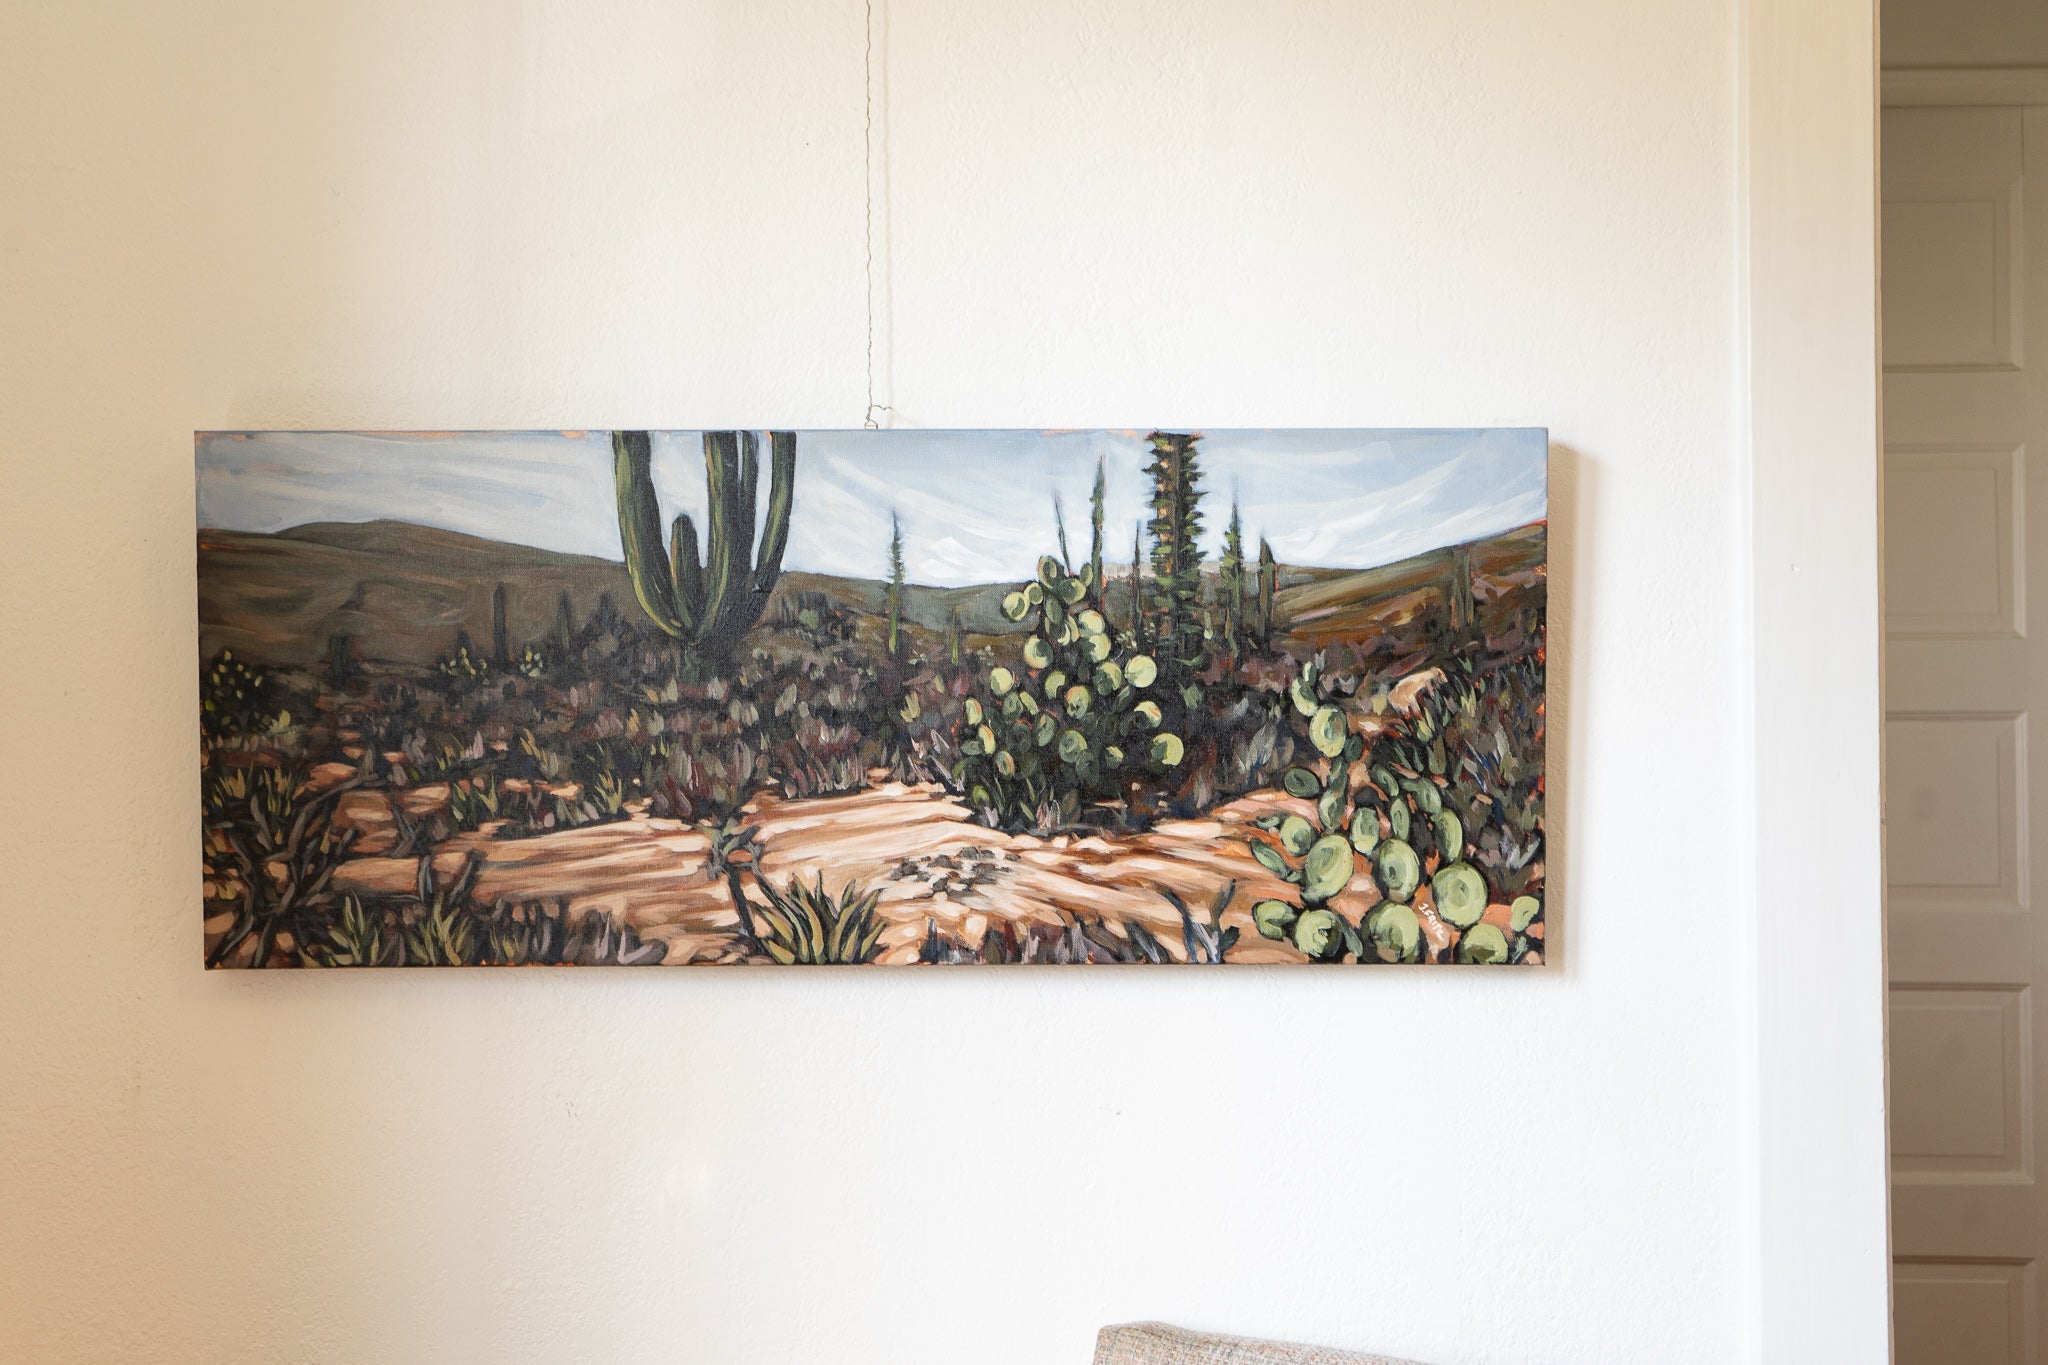 Desert Cactus LV / Joshua Tree, California Art Print by Desert Daze